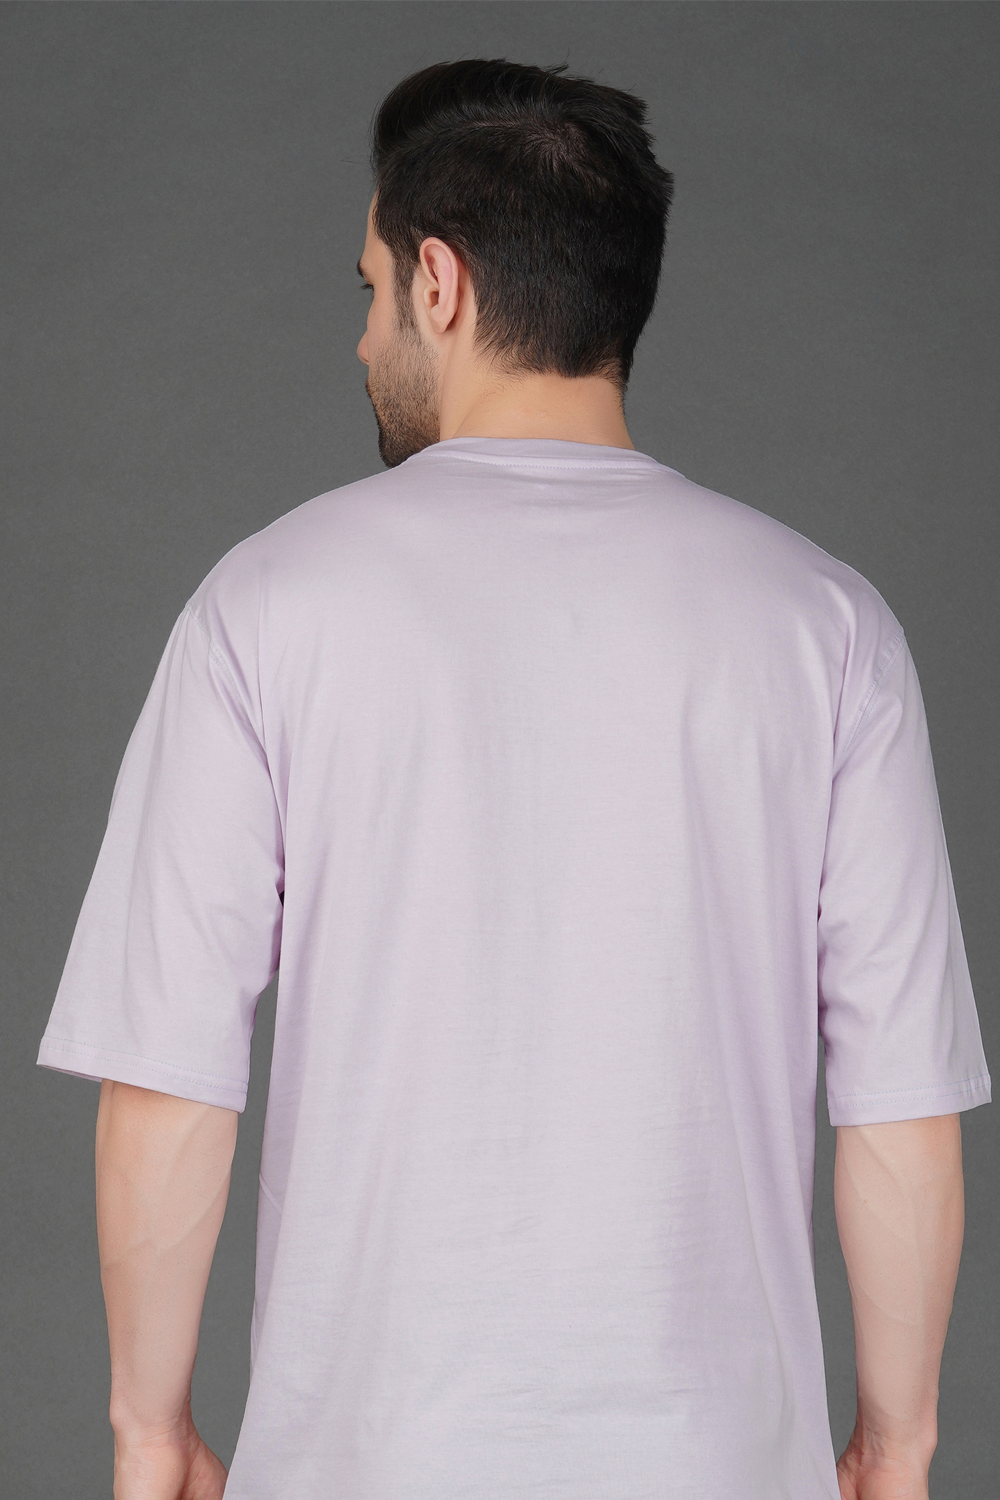 Aisthetikos Mens Oversized Tshirt (Pista)